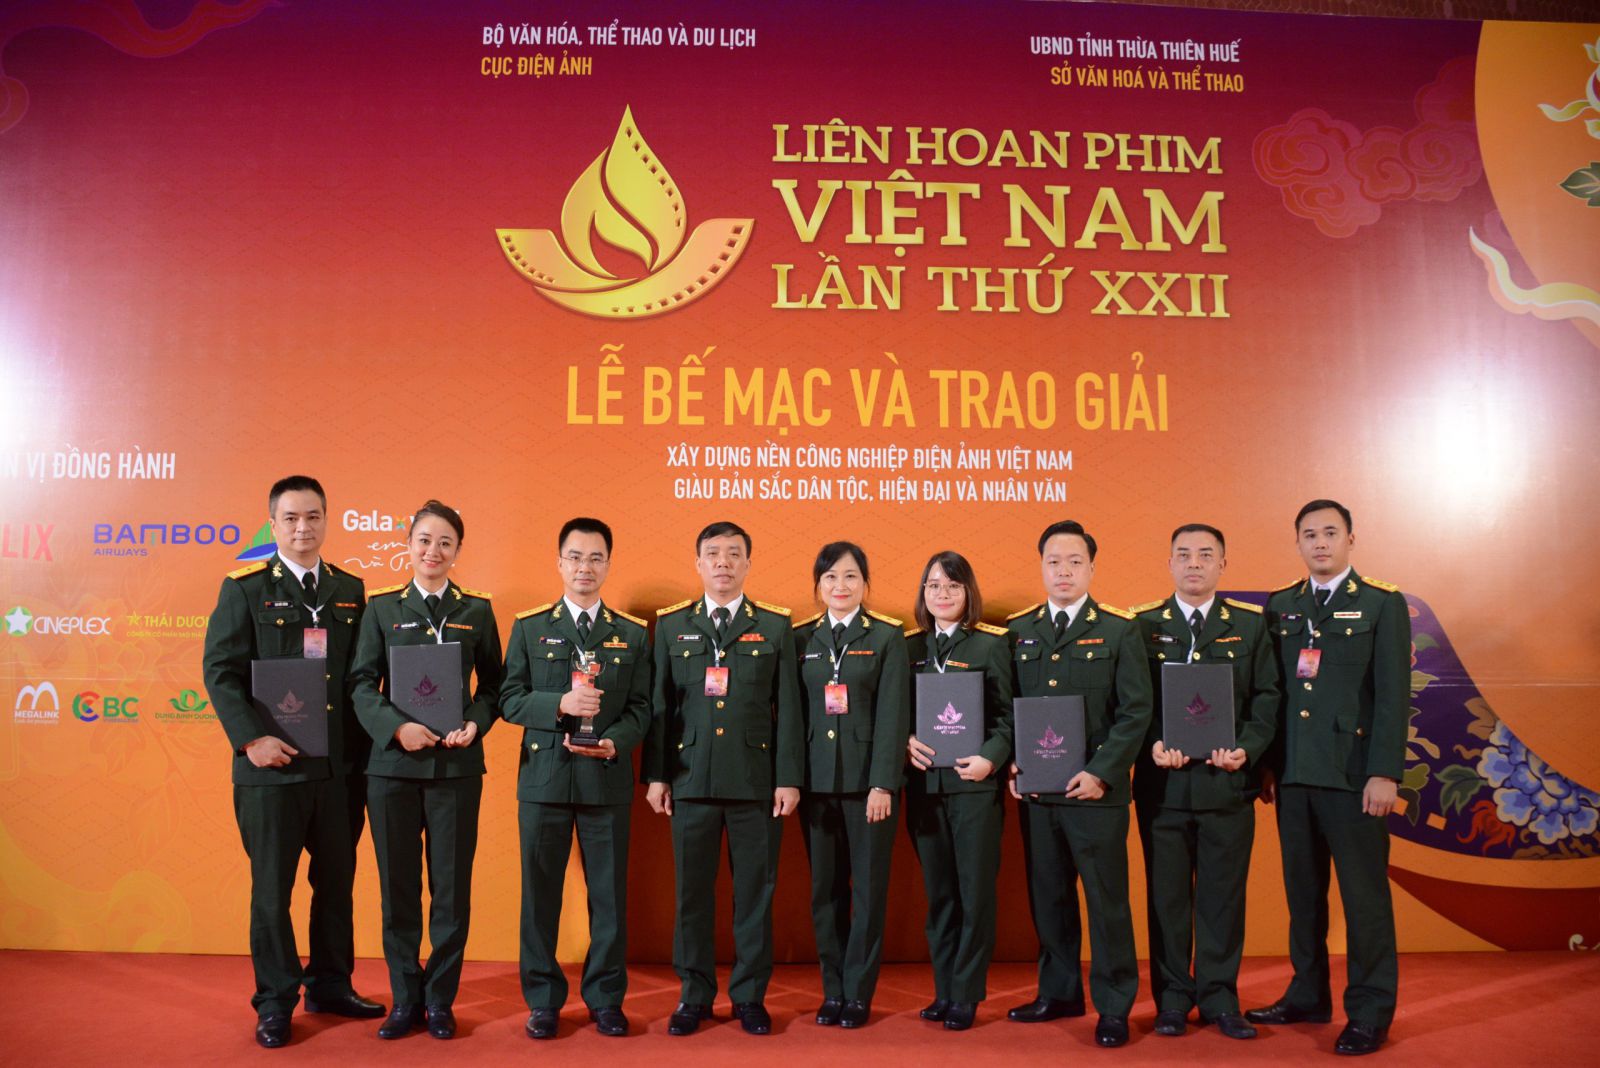 Liên hoan phim Việt Nam